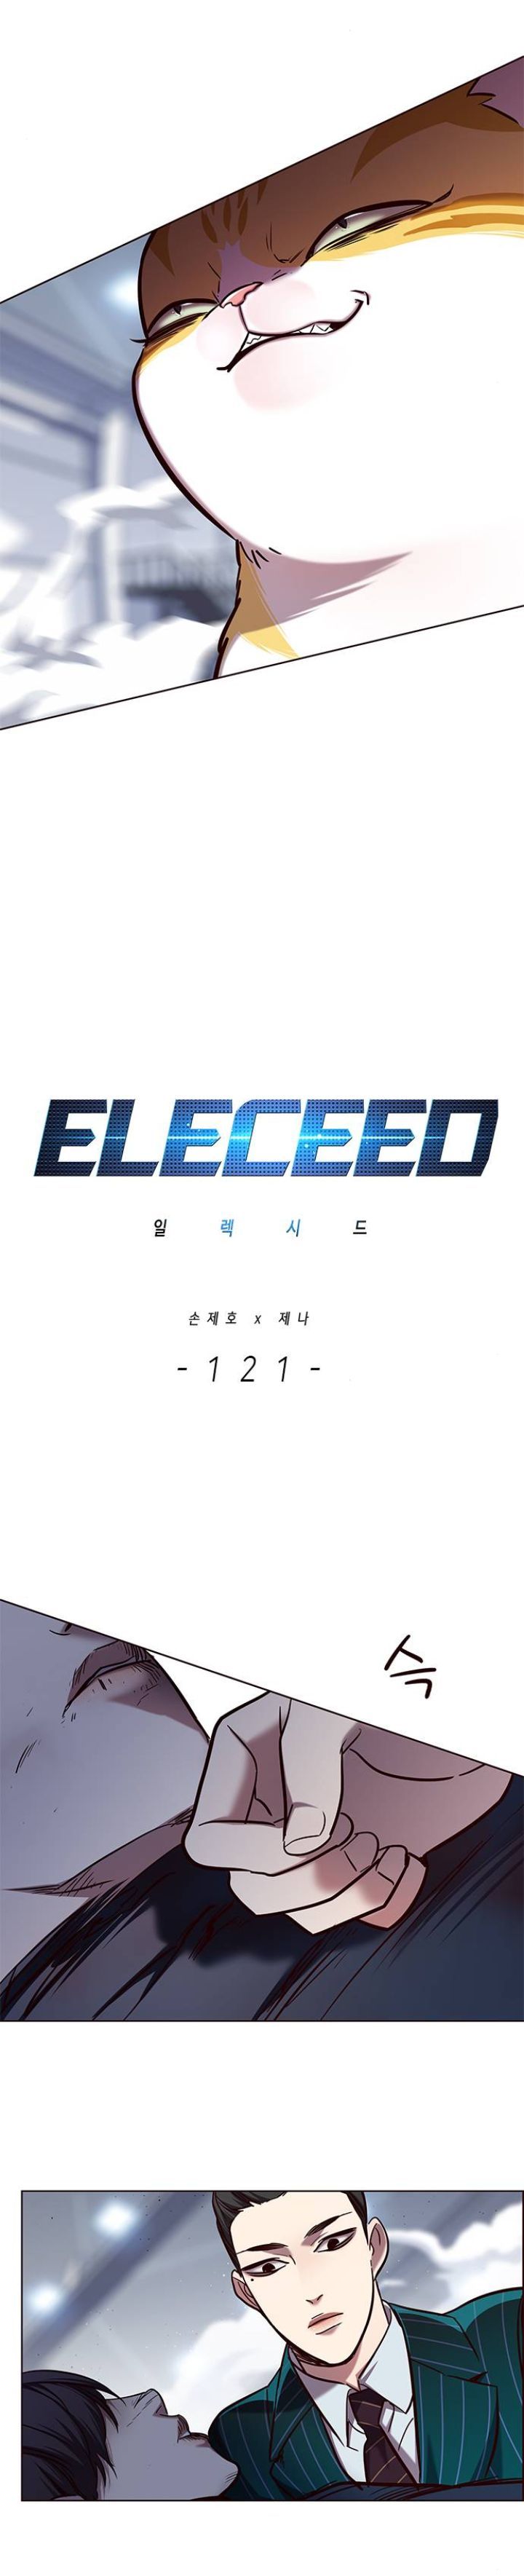 Eleceed 121 2